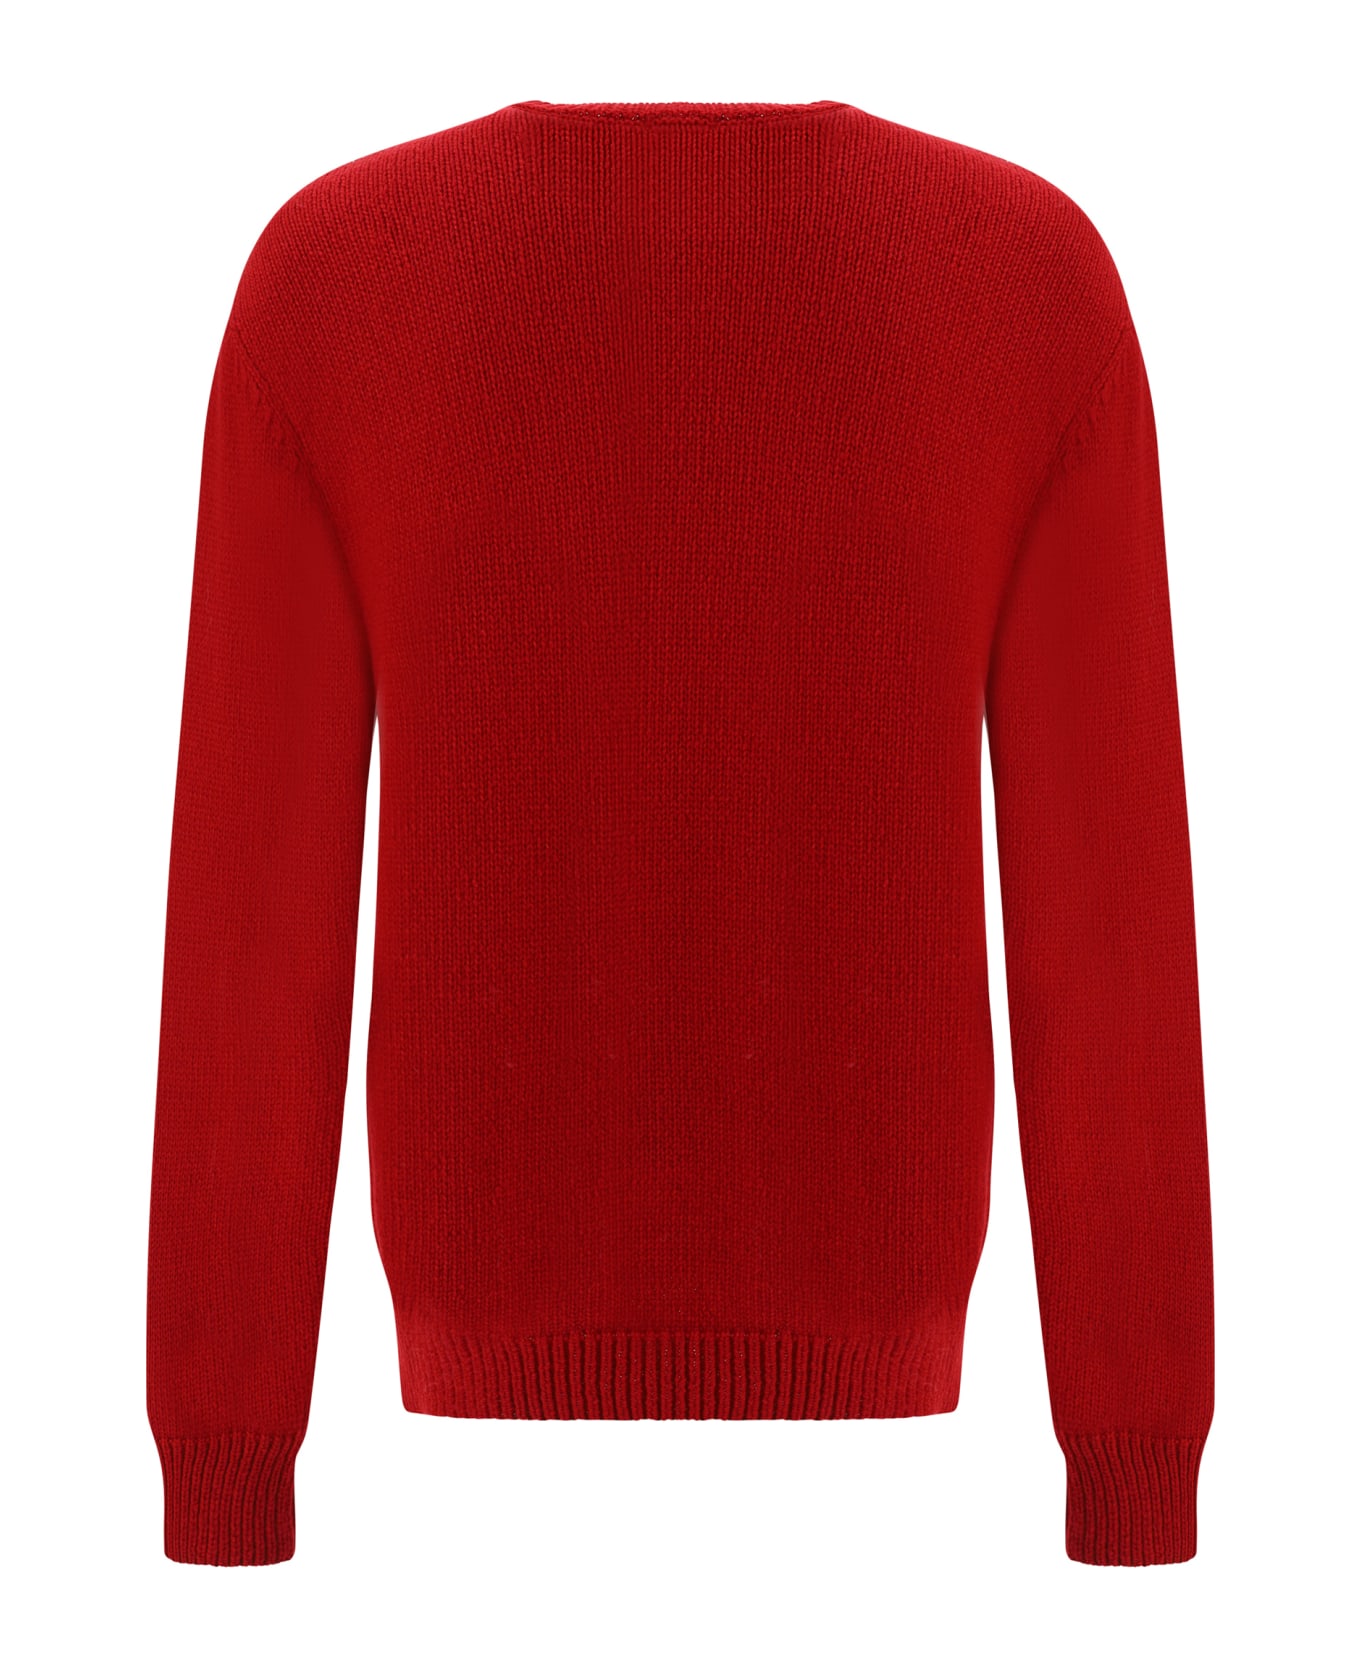 Balmain Logo Wool Sweater - Red